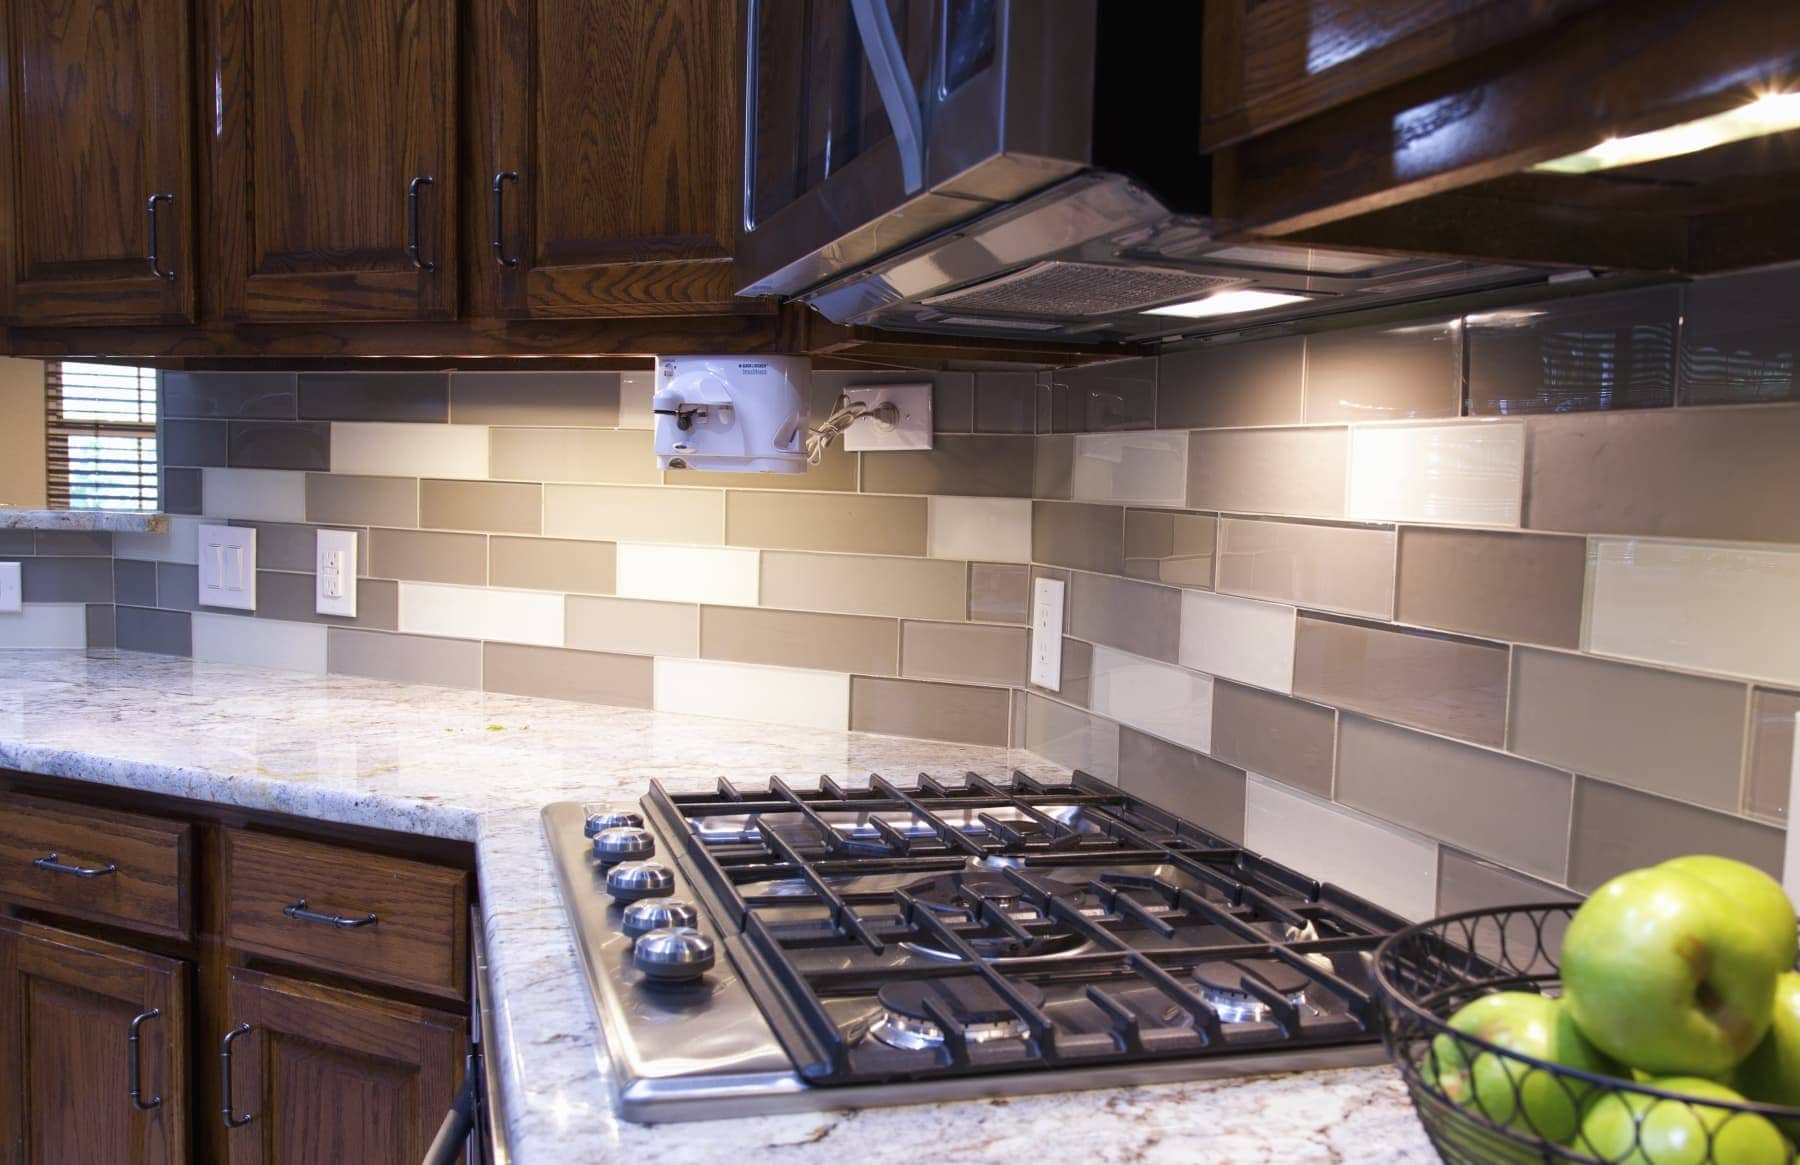 Glass tiles as a kitchen backsplash